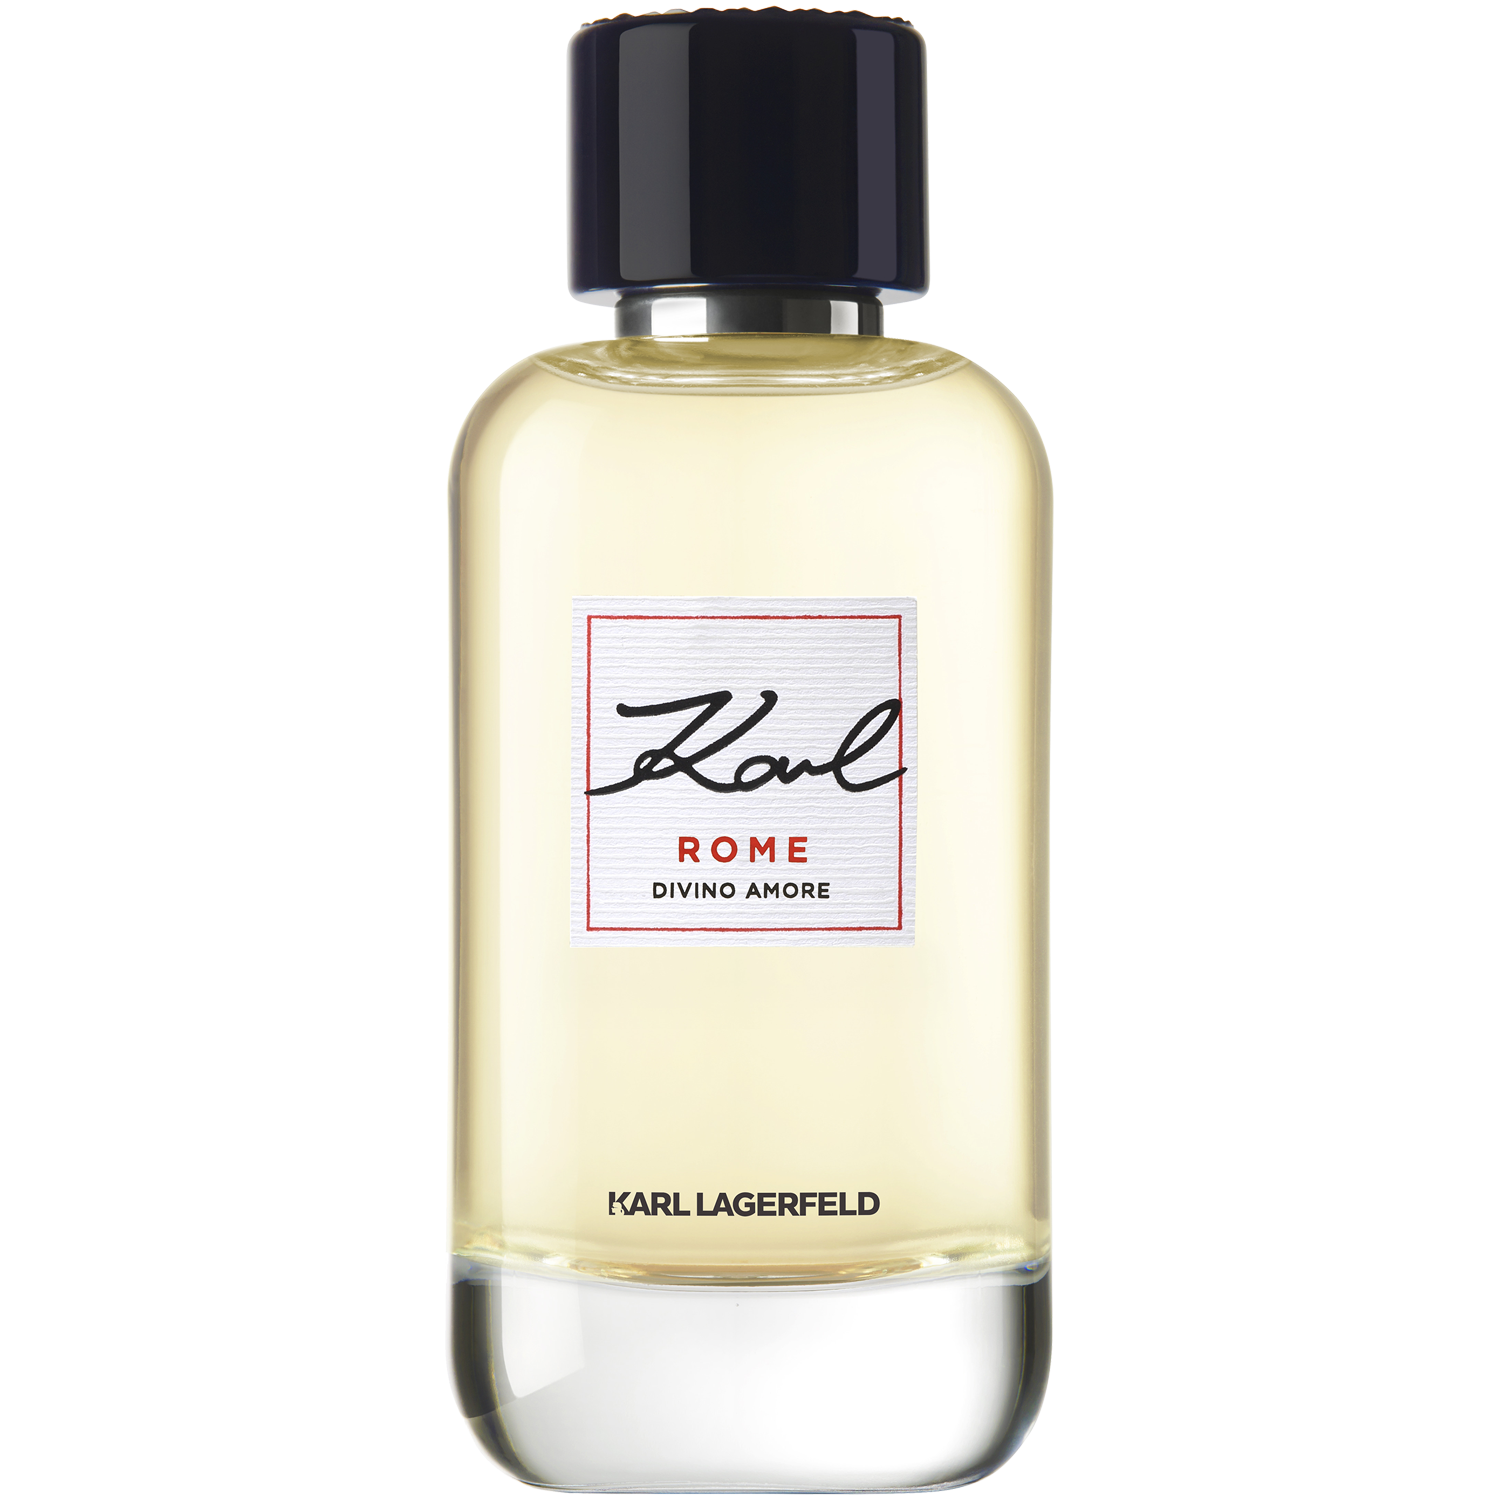 Женская парфюмированная вода Karl Lagerfeld Rome Divino Amore, 100 мл в городе интересная прогулка колкер м